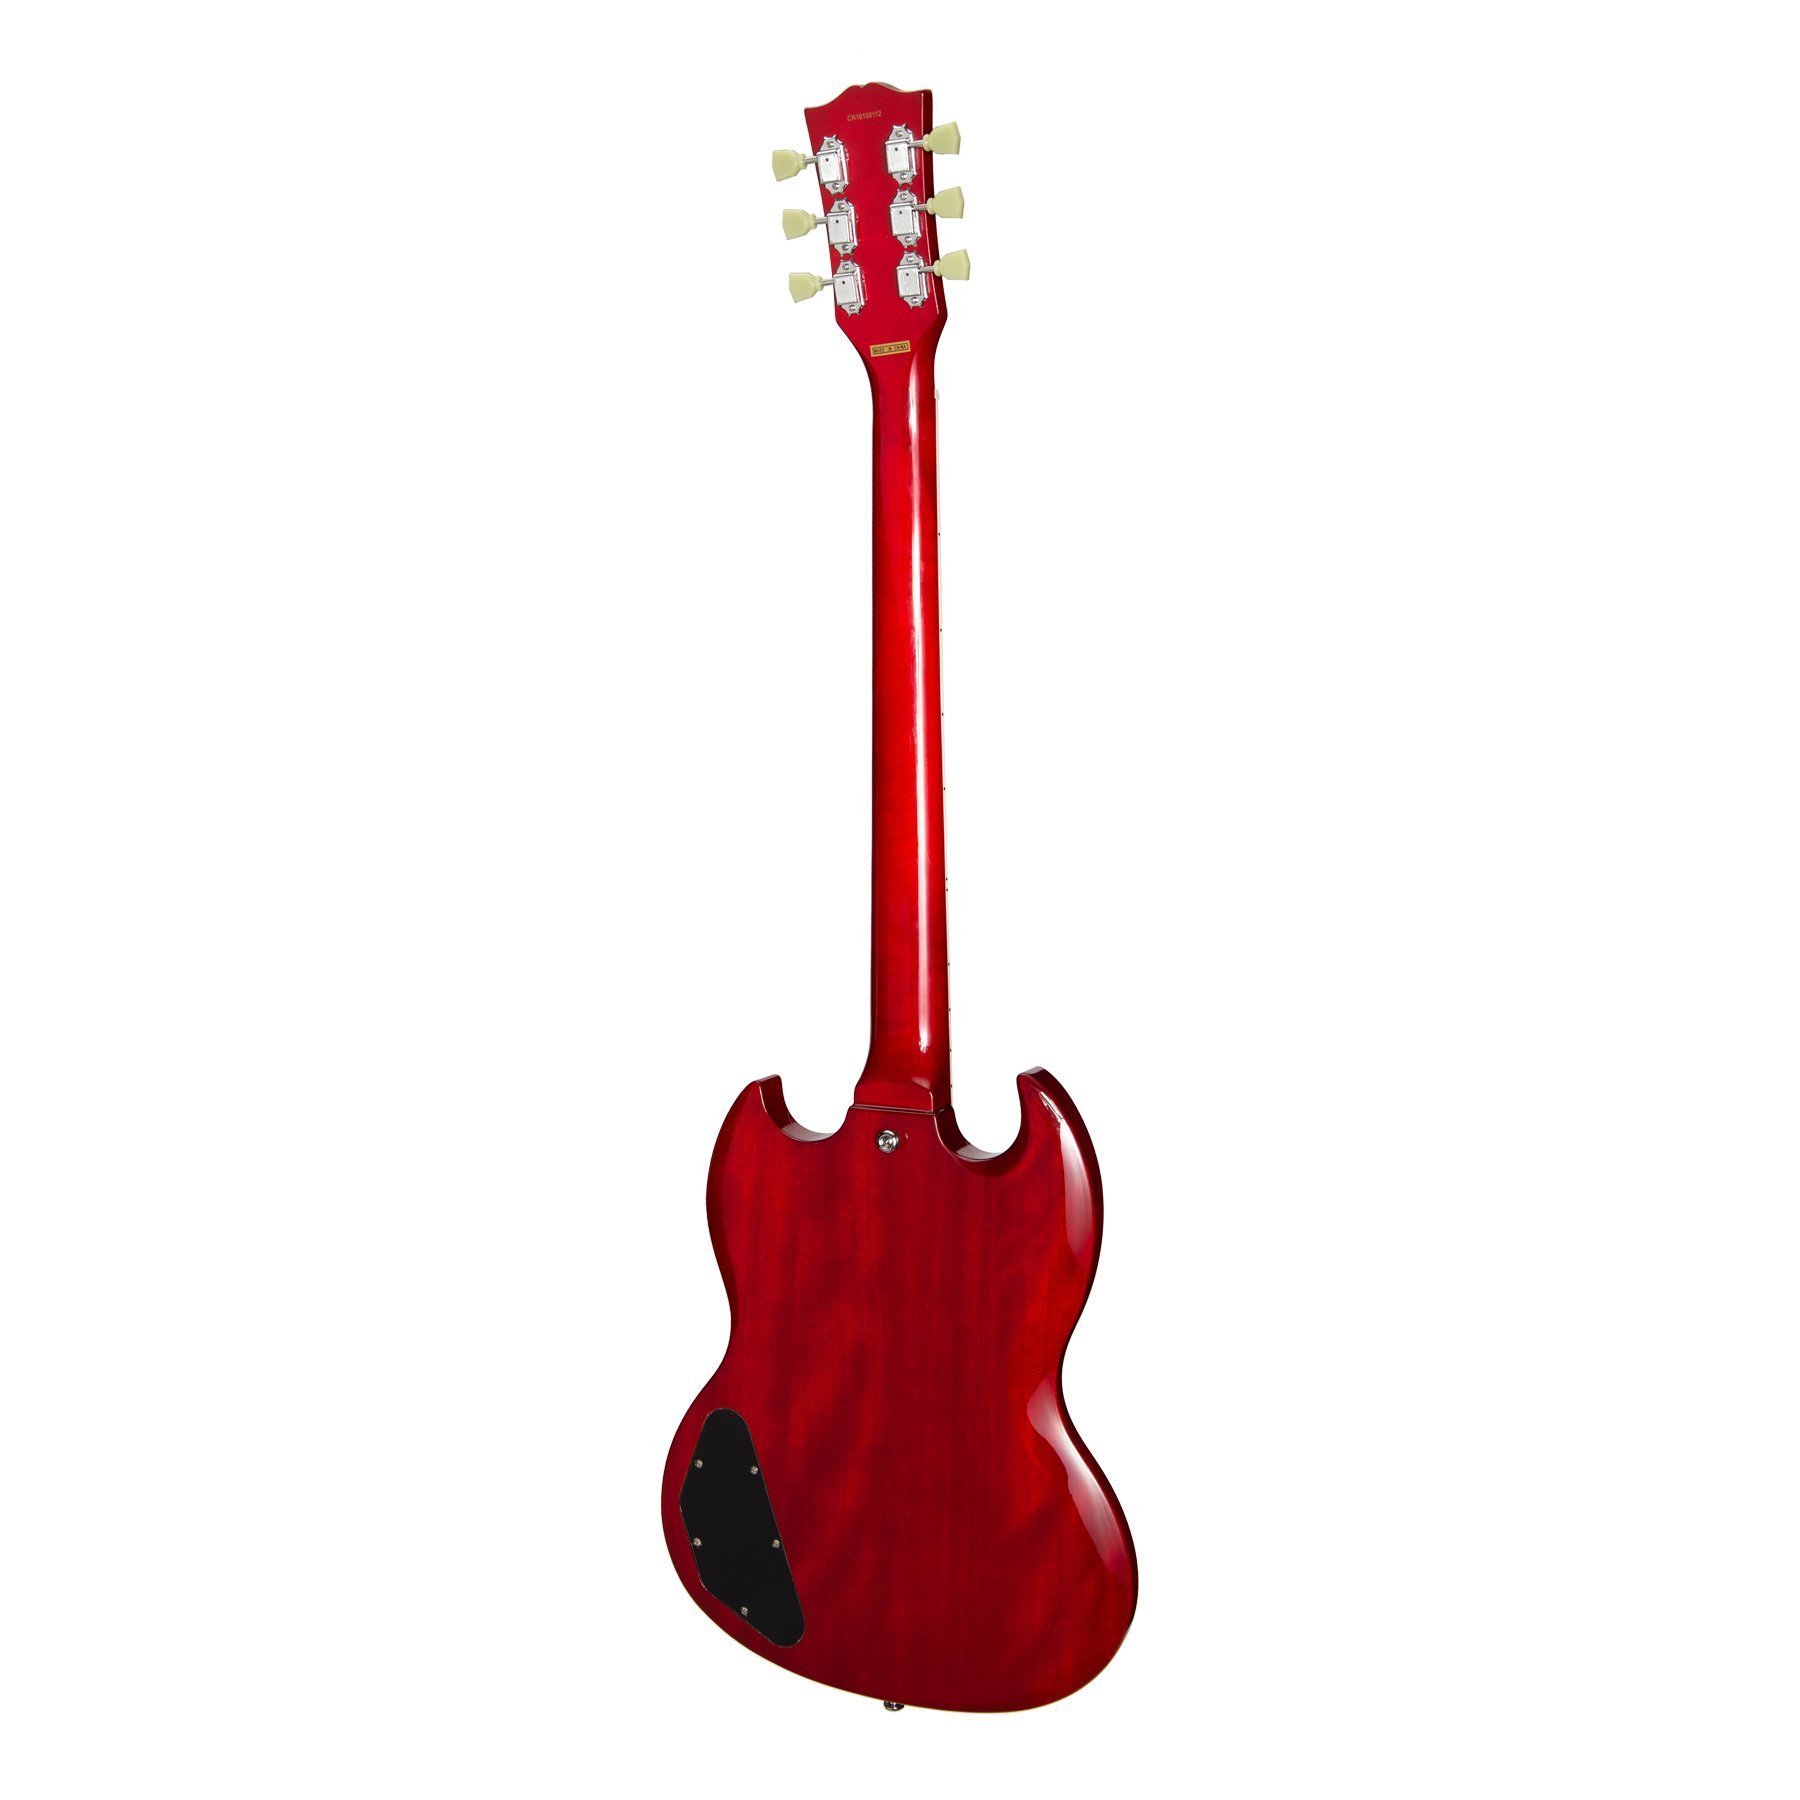 Đàn Guitar Điện Tokai - Tokai 'Traditional Series' SG-58 SG-Style Electric Guitar (Cherry) - Hàng chính hãng